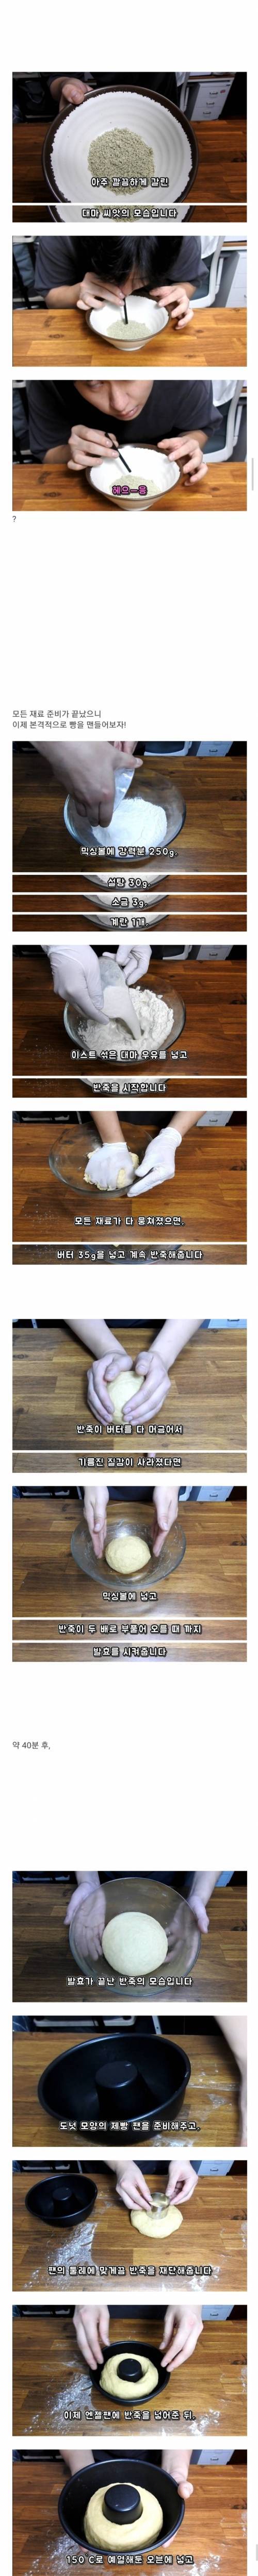 대마 씨앗으로 만든 빵.jpg